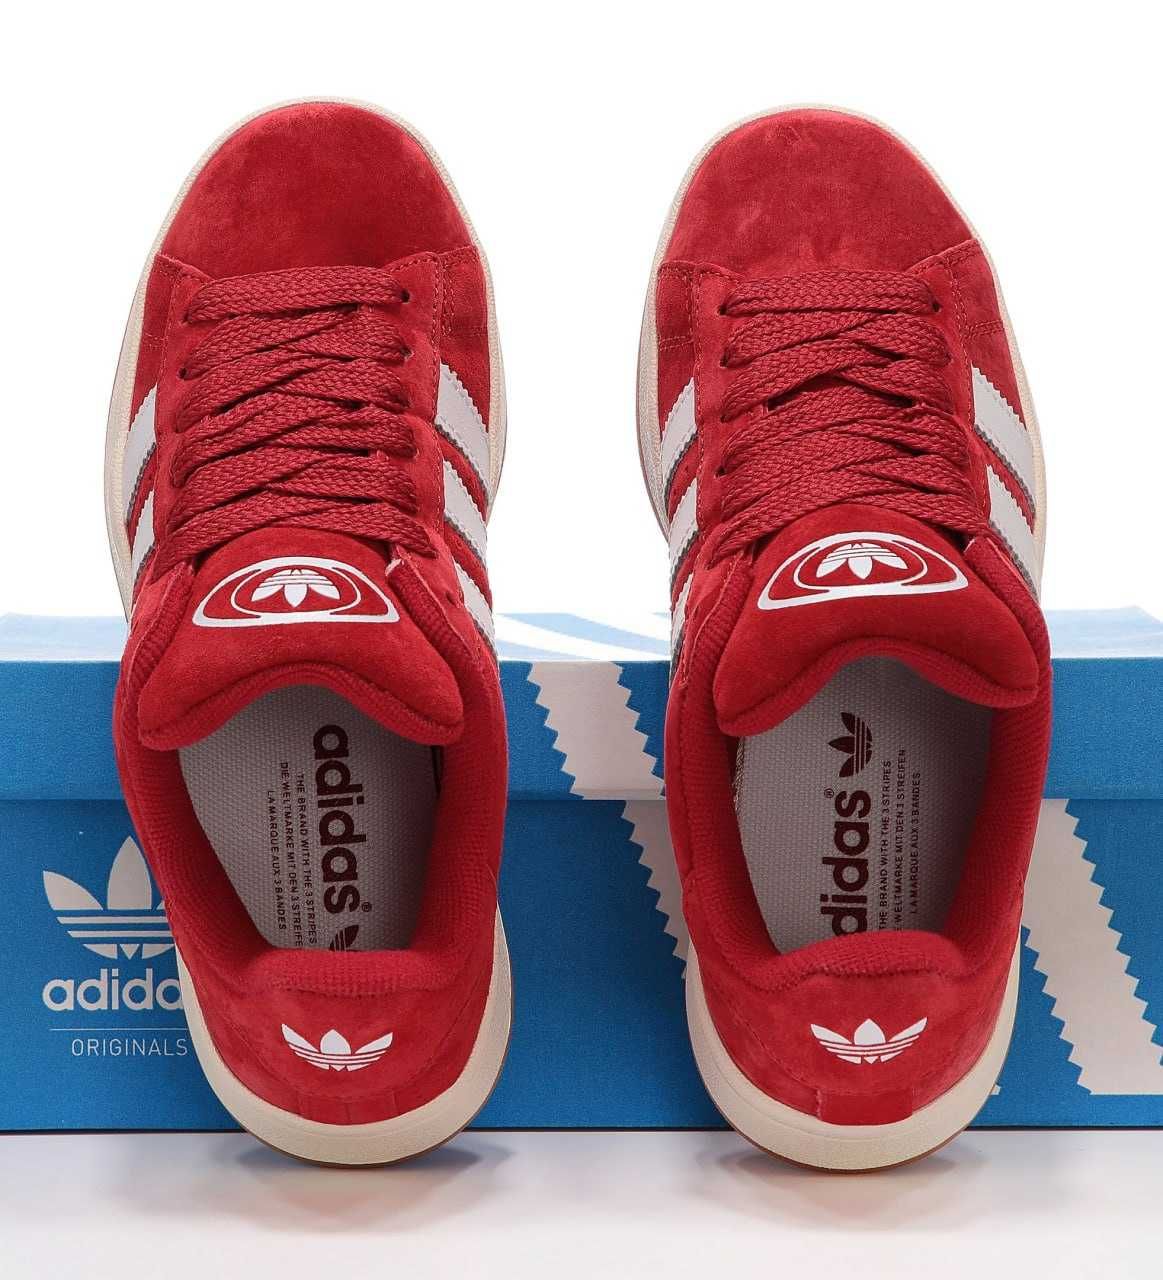 ЗНИЖКА! кросівки Adidas Campus червоні  кросовки адидас красные кеды